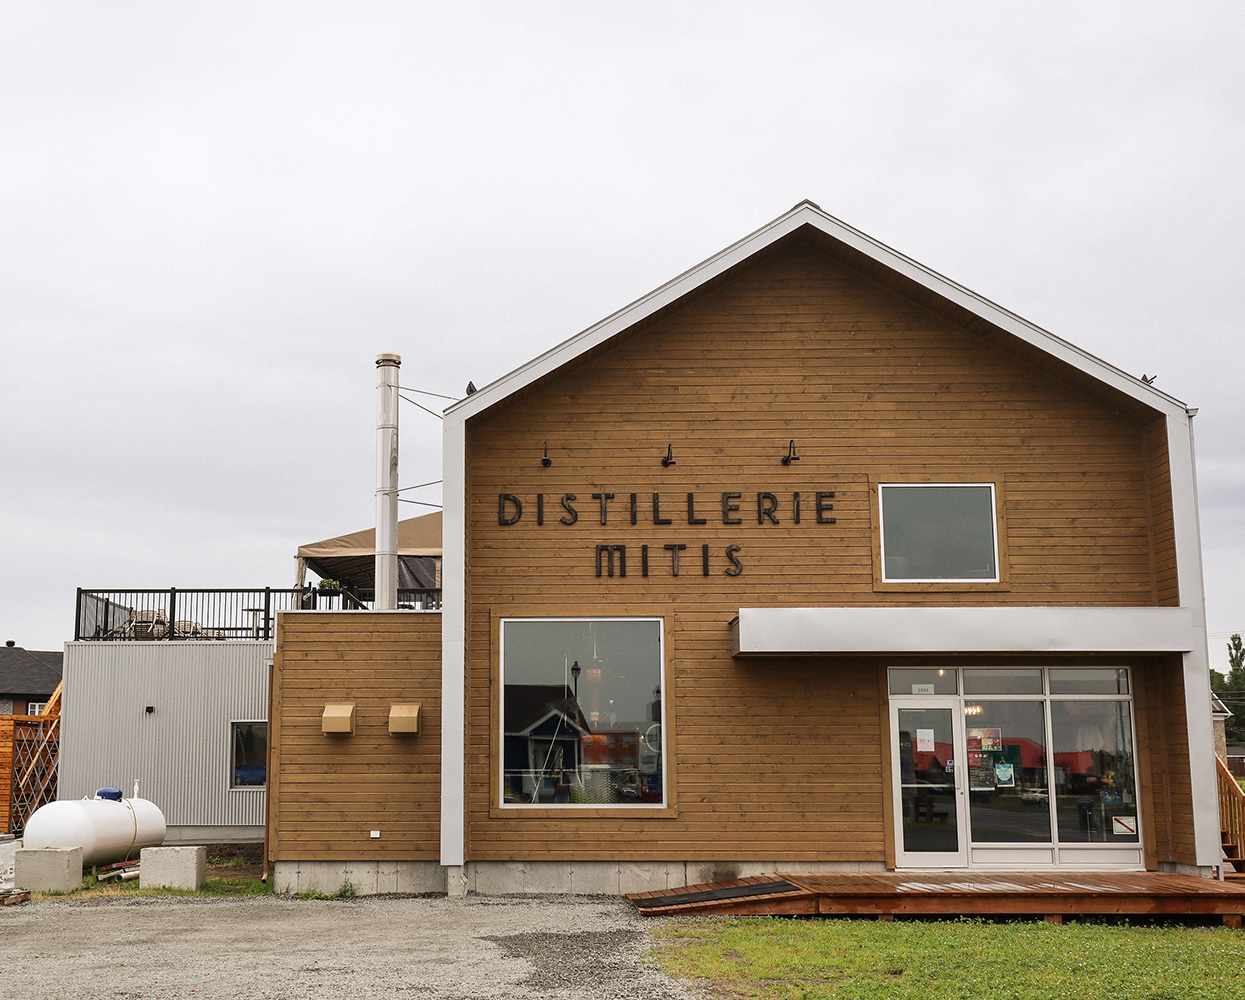 Distillerie Mitis: Cette nouvelle terrasse sur le toit est un arrêt obligé lors de votre prochain voyage vers la Gaspésie